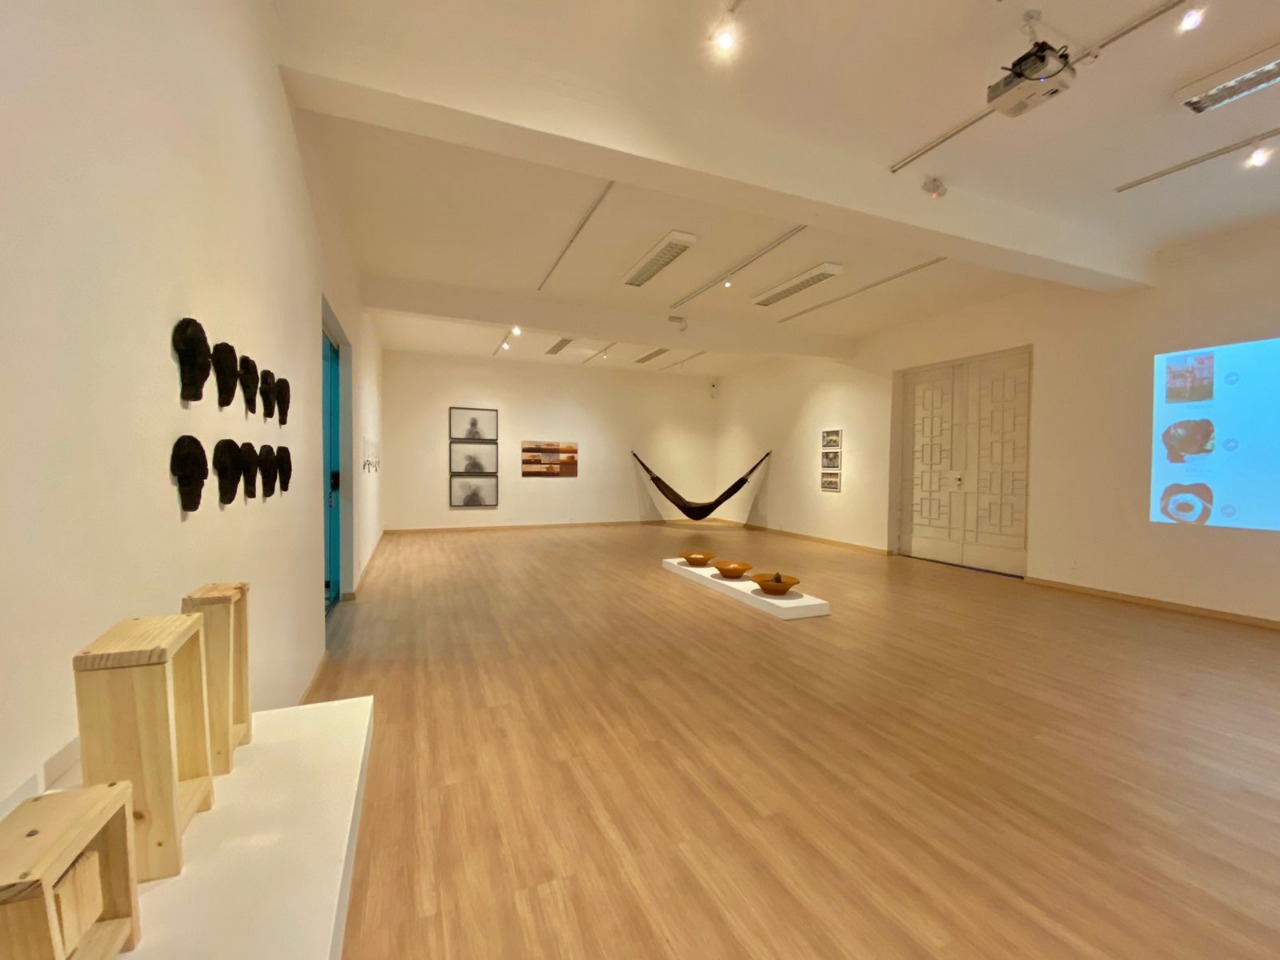 Salão de beleza em Anápolis: opções para uma repaginada no visual